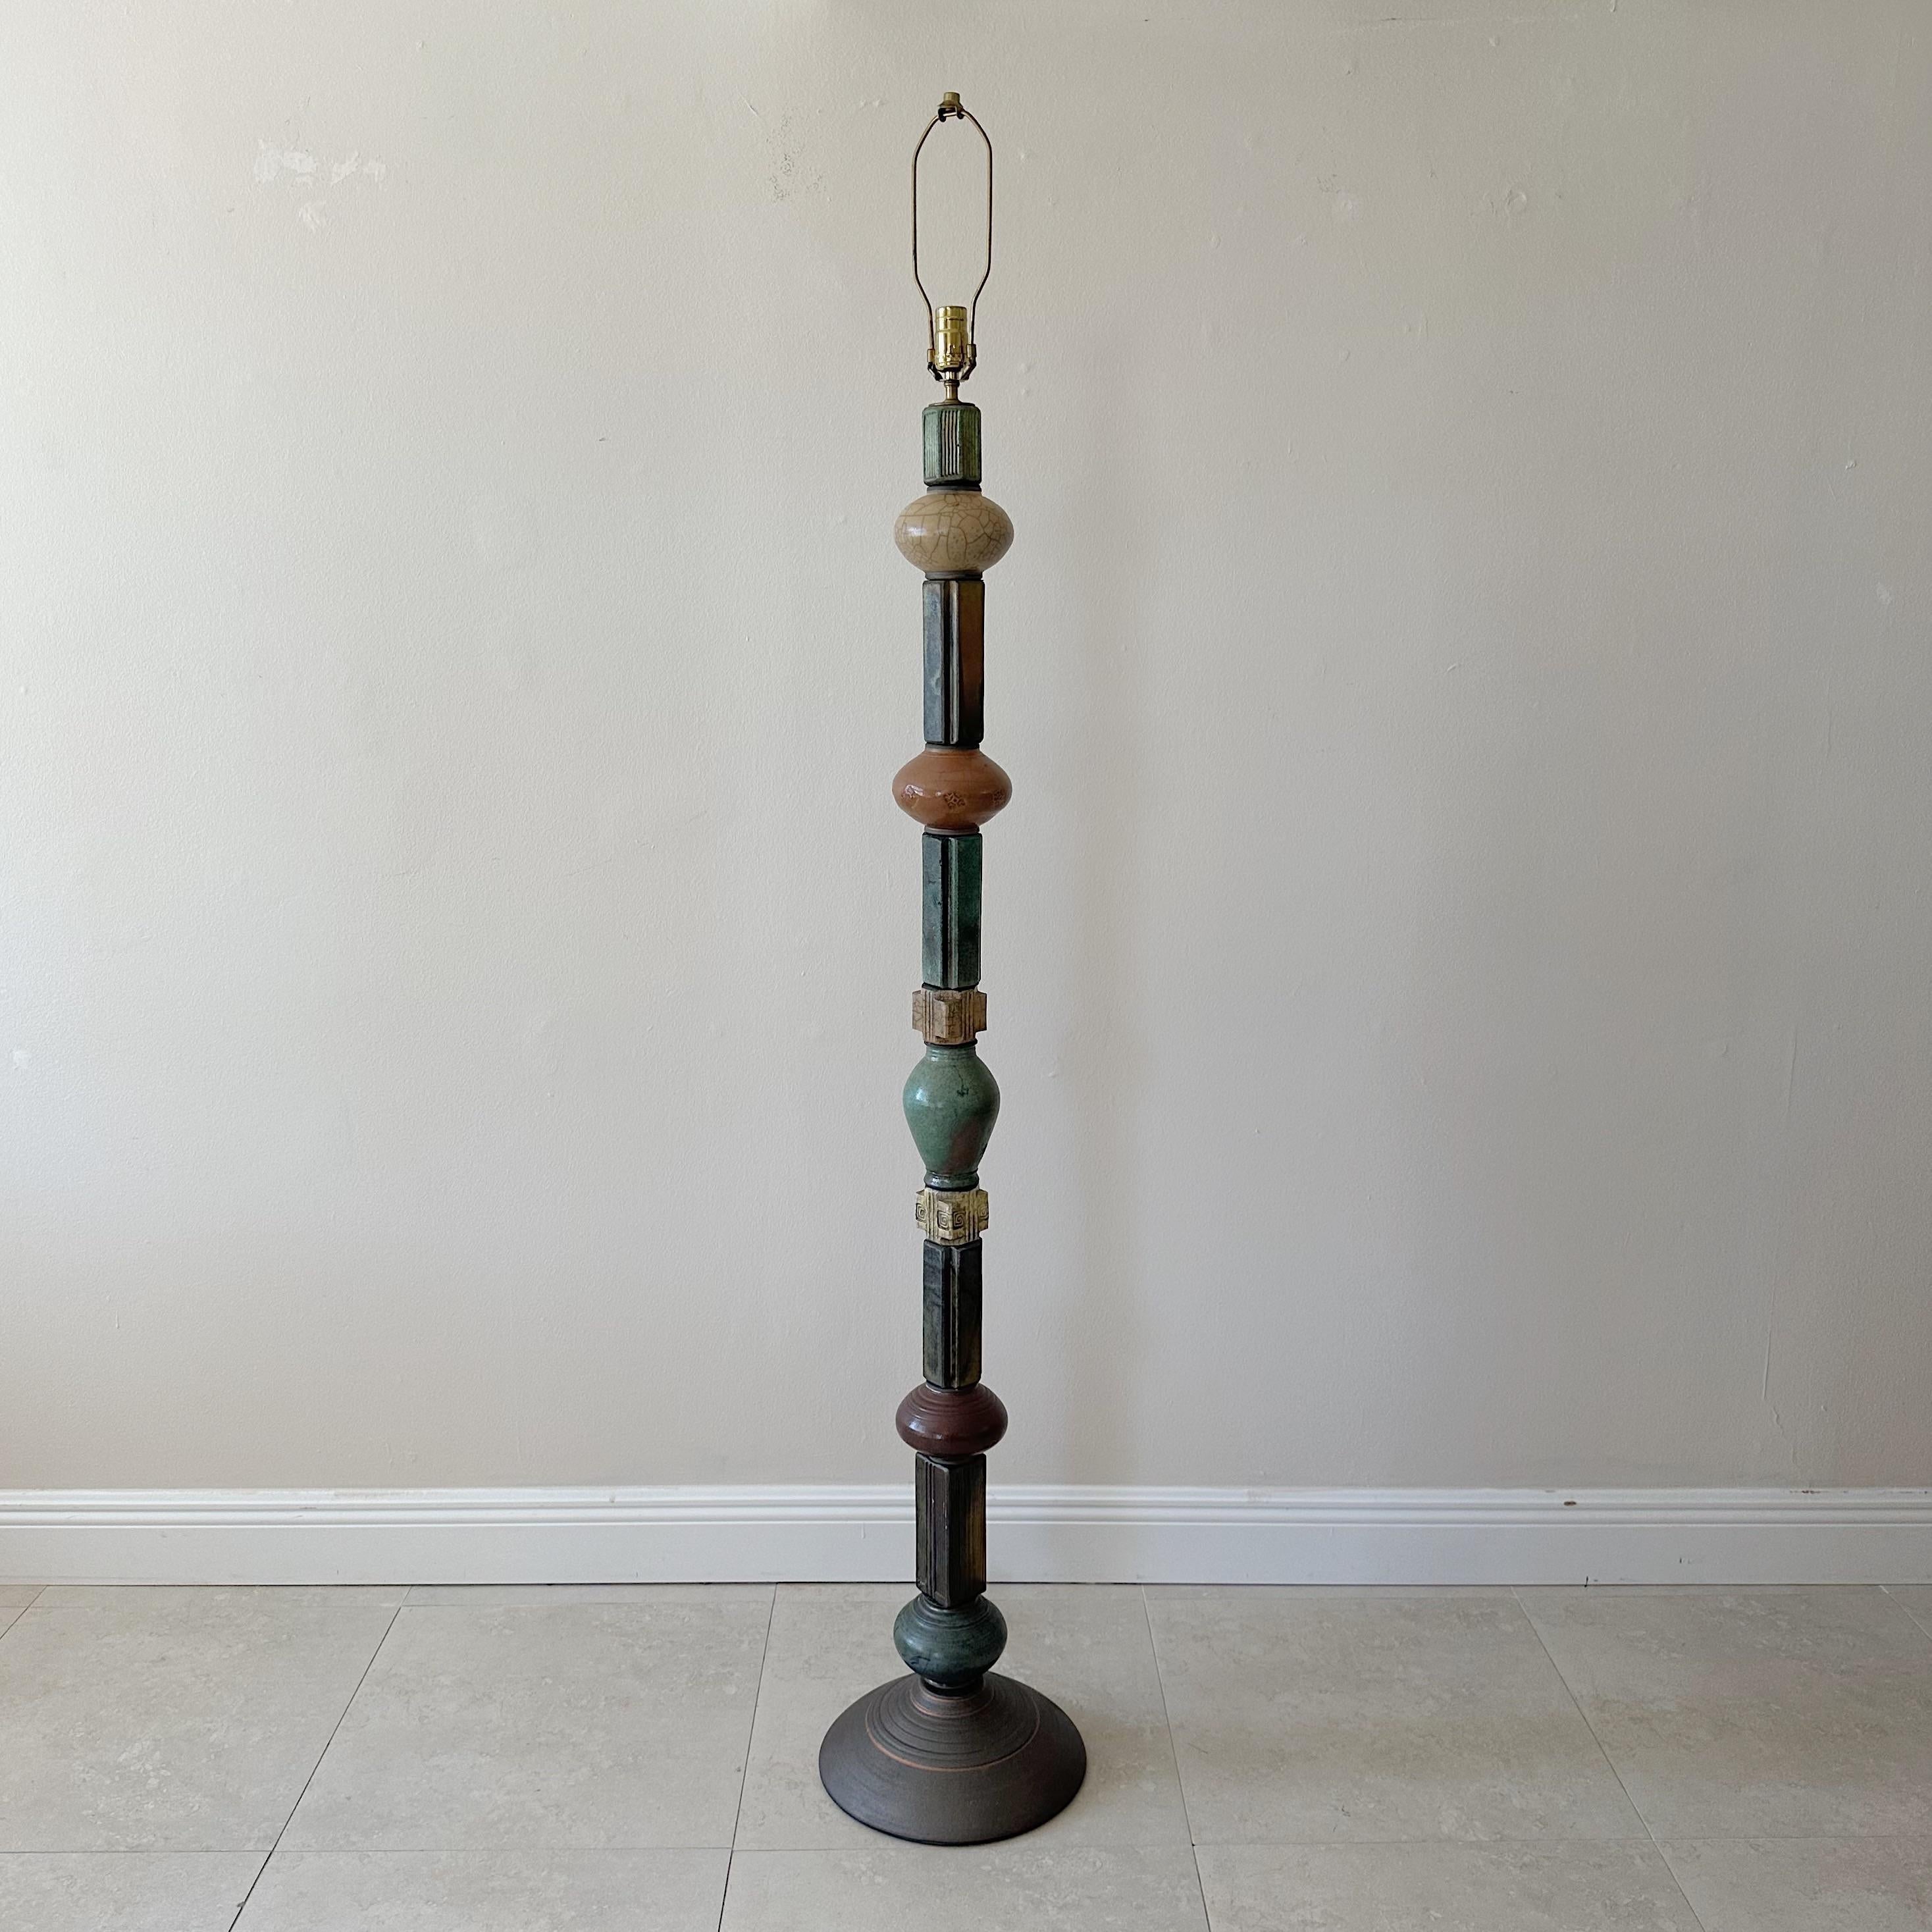 Diese einzigartige Stehlampe besteht aus 13 verschiedenen Töpferstücken, die auf einem einzigen Stiel angeordnet sind. Jedes Stück ist mit einer eigenen aufwändigen Dekoration und Farbgebung versehen, die der Lampe ein auffälliges und individuelles